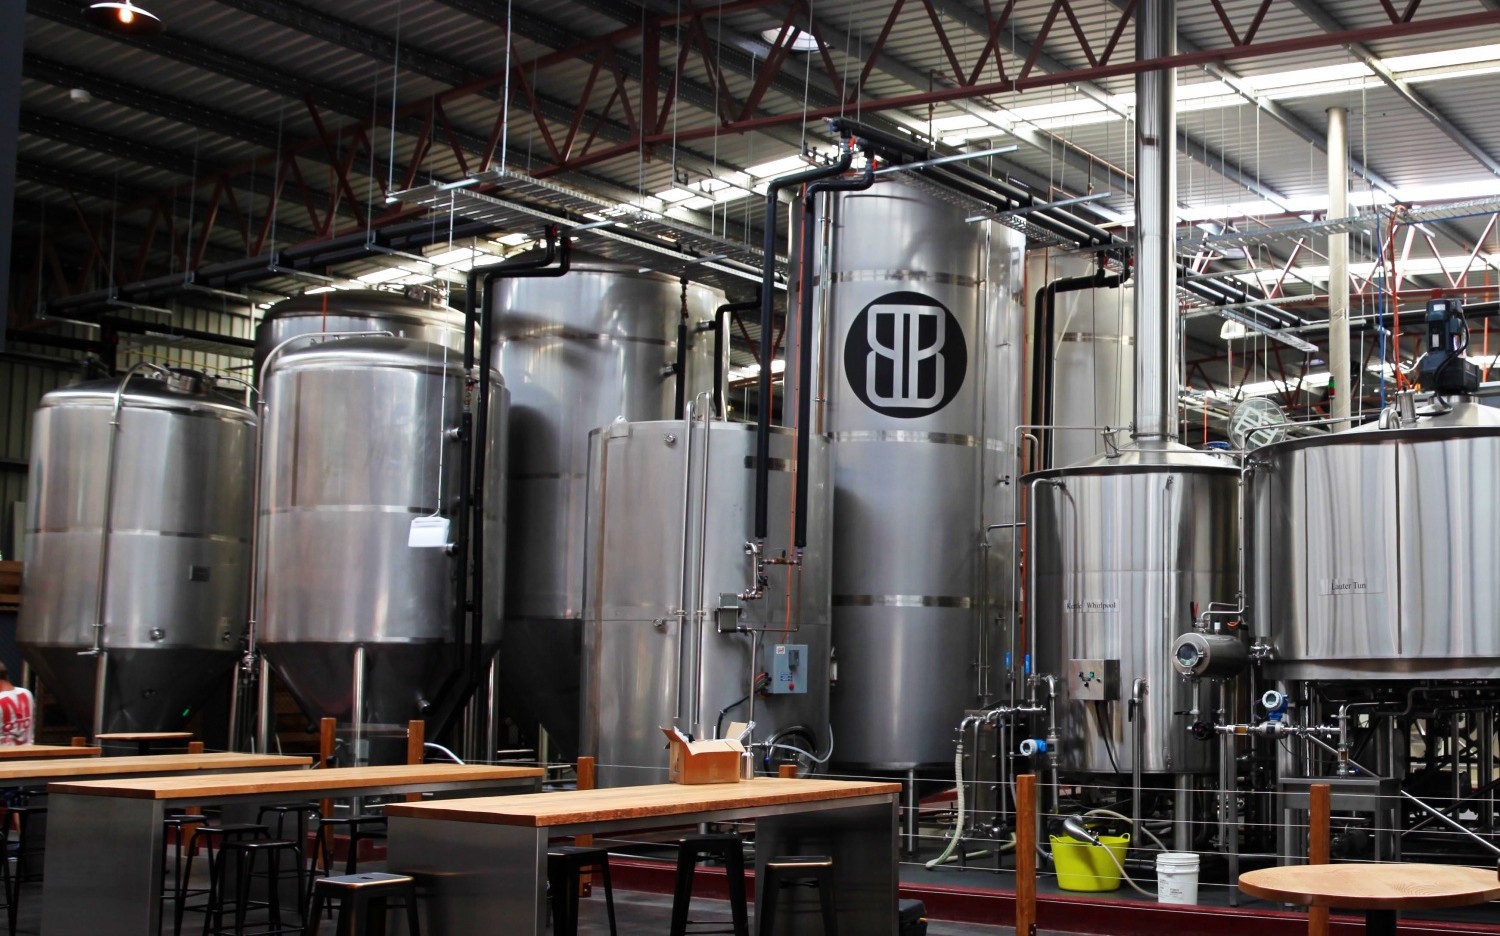 Burleigh Brewing Co